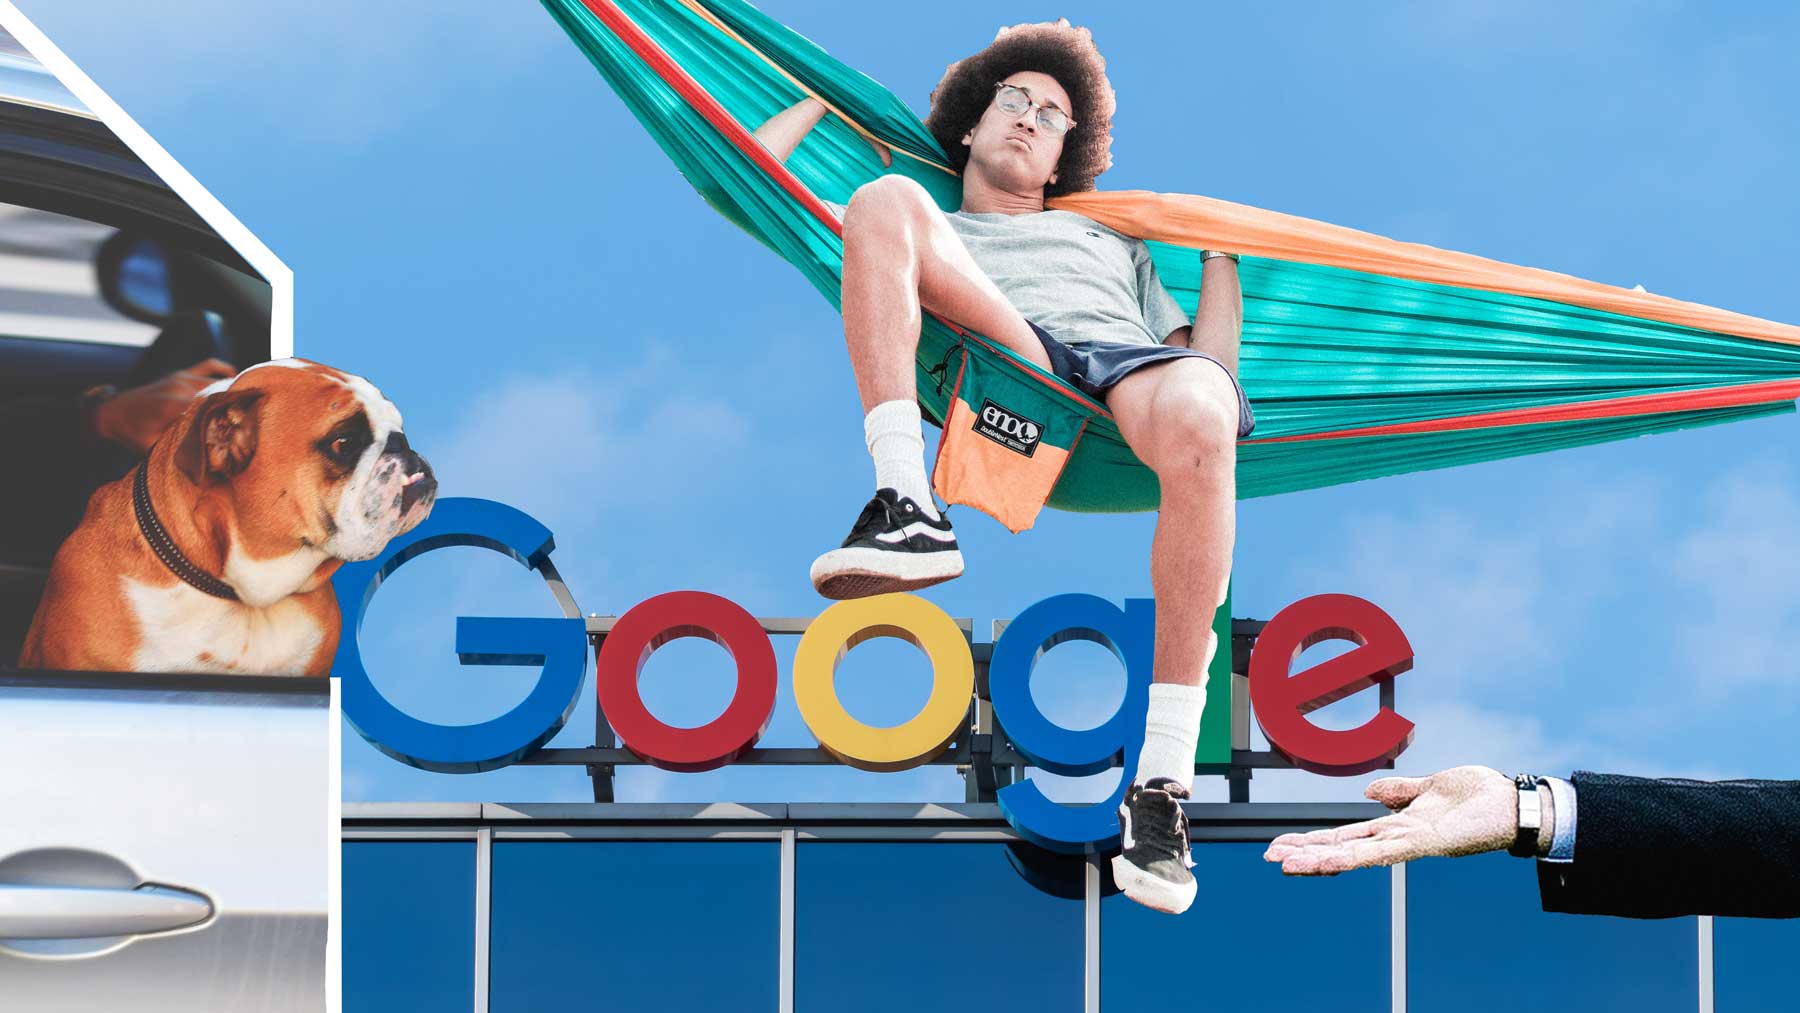 Google - en drömarbetsplats för många unga.